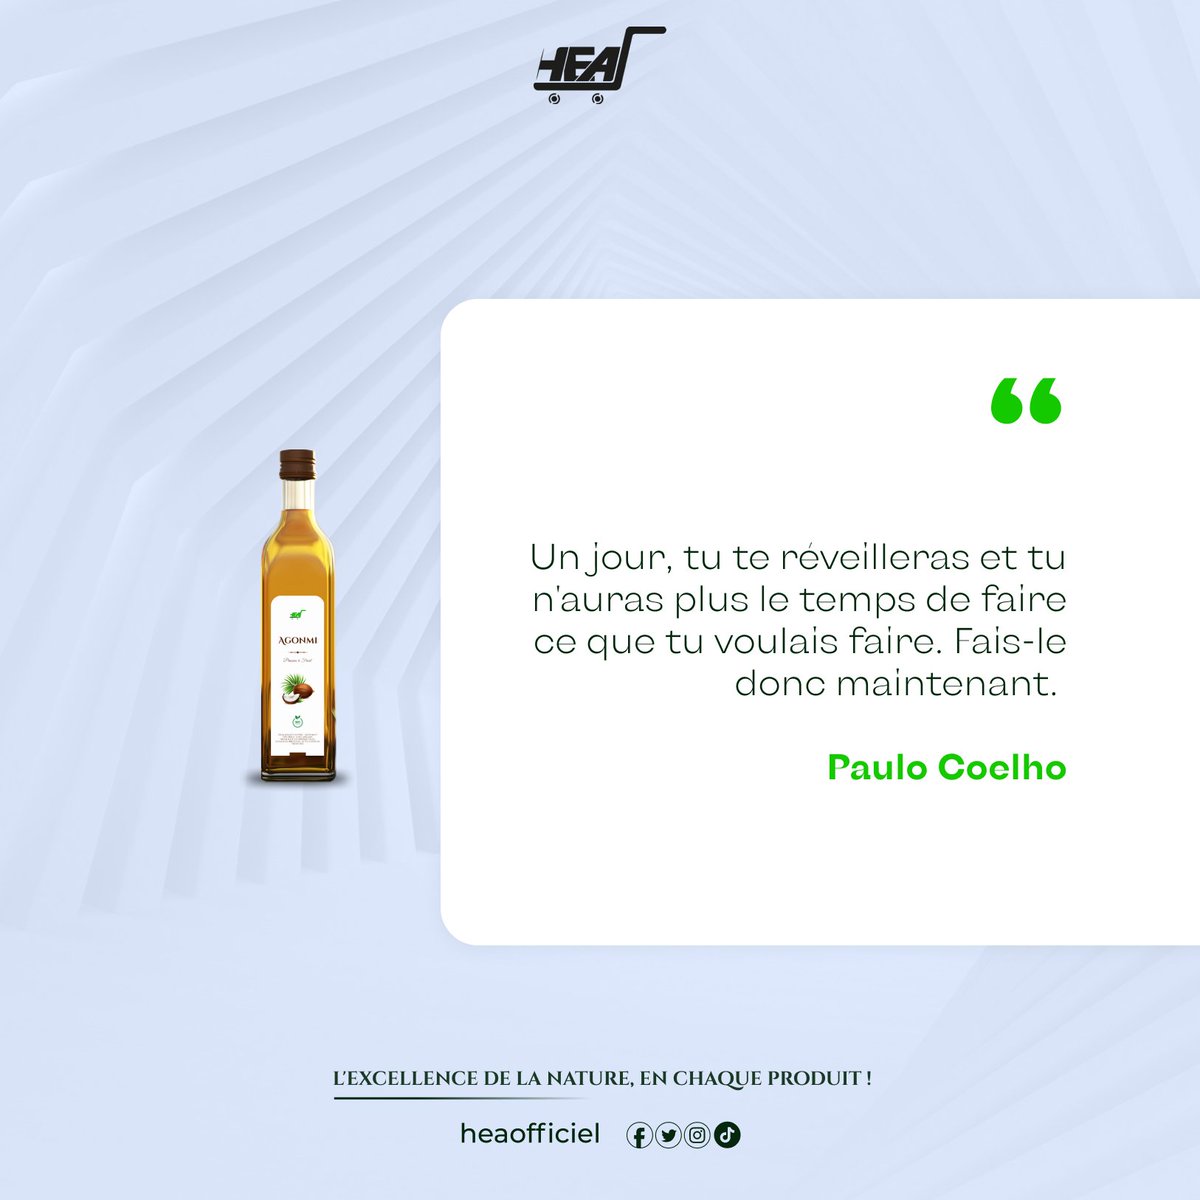 « Un jour, tu te réveilleras et tu n'auras plus le temps de faire ce que tu voulais faire. Fais-le donc maintenant. », Paulo Coelho.

Sur cette pensée nous vous souhaitons une bonne semaine.

#motivation #travail #bonnesemaine